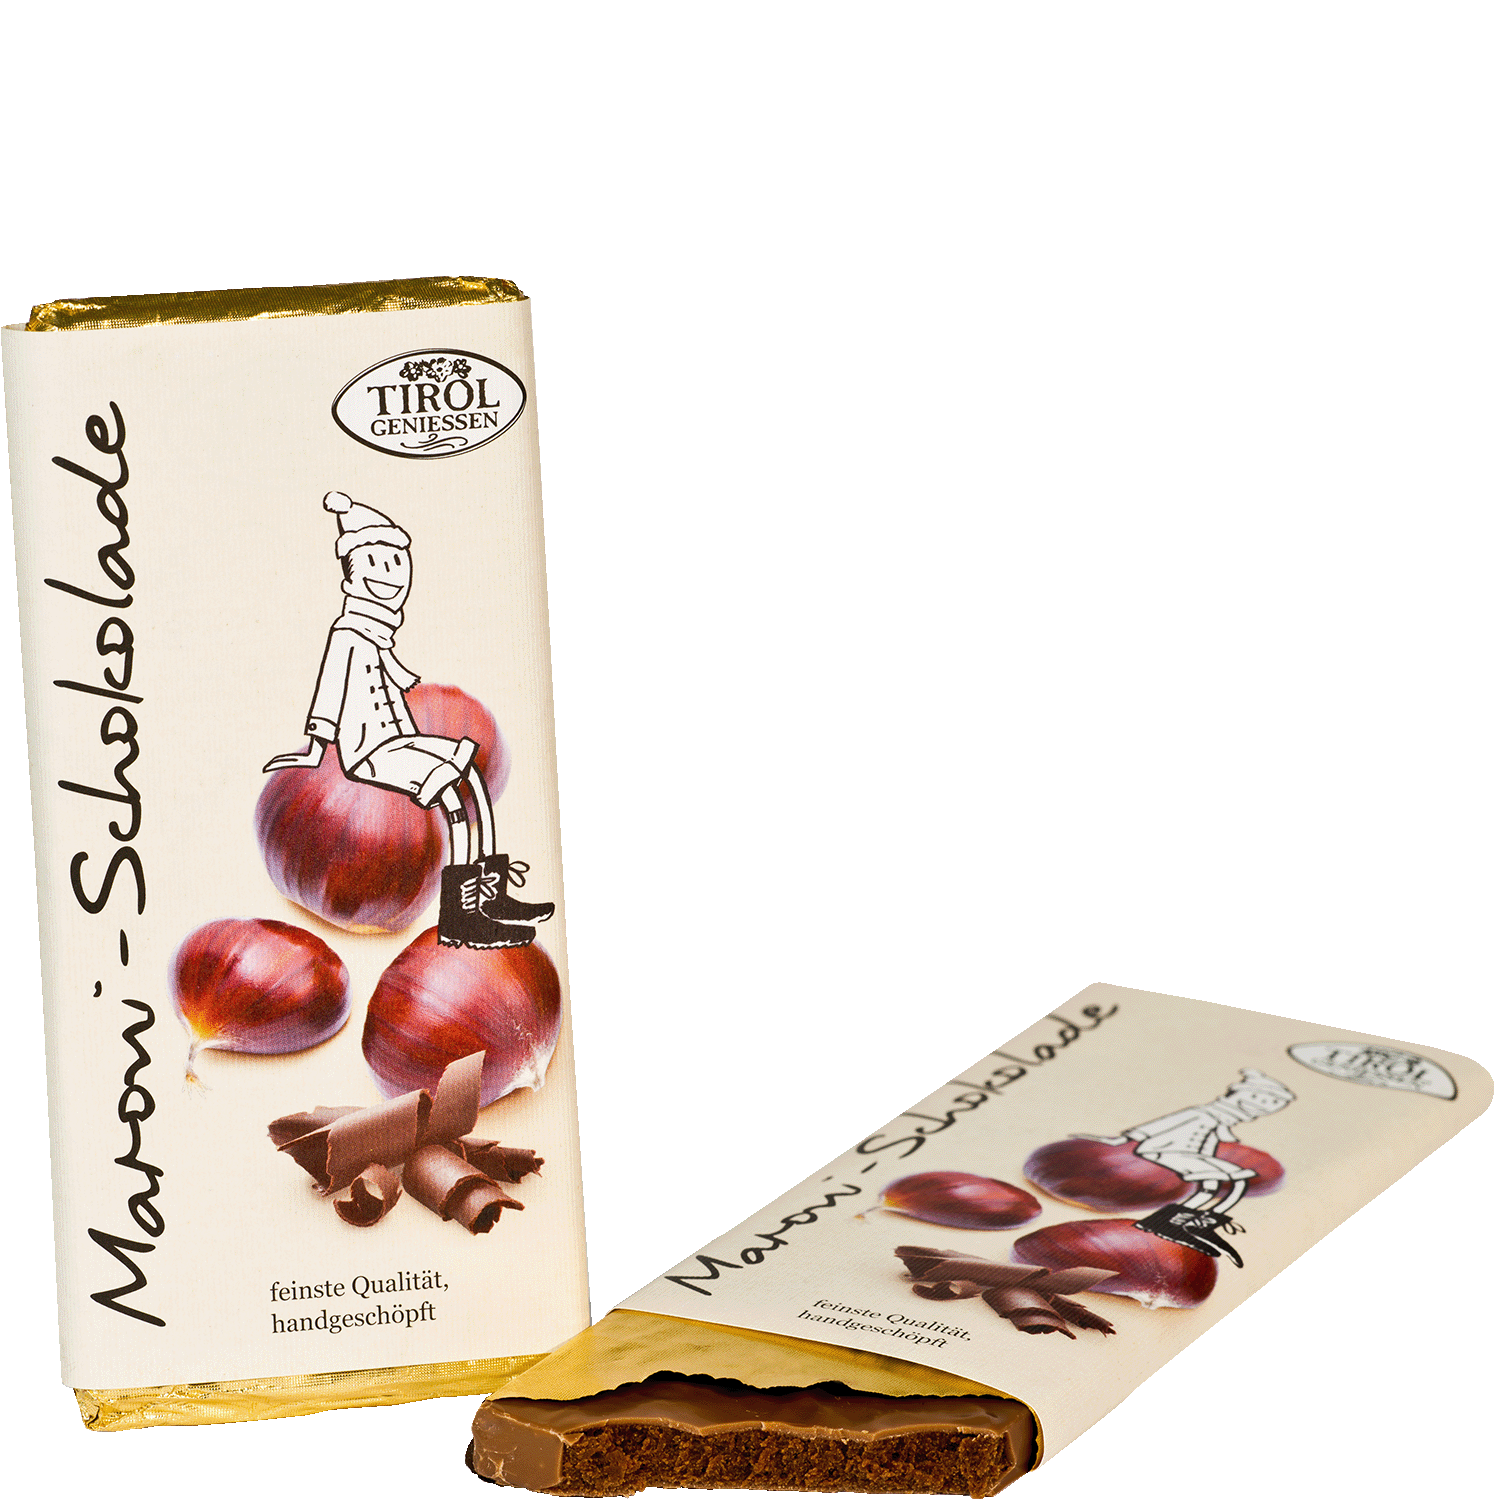 Maroni Schokolade von Tirol geniessen